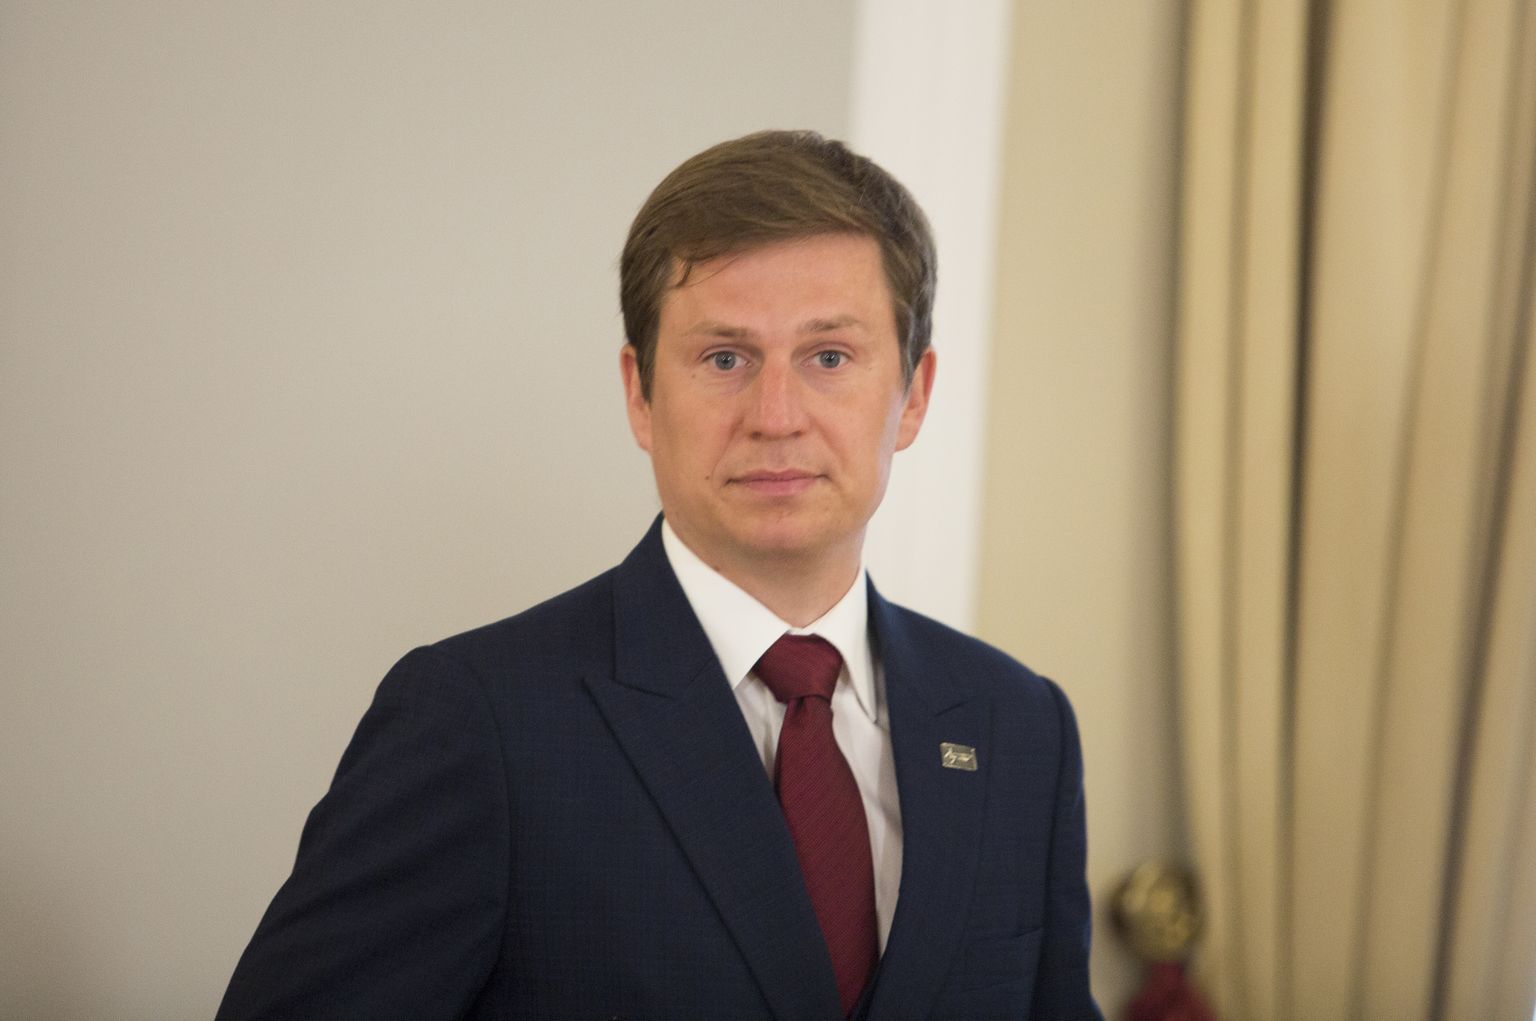 Latvijas investīciju un attīstības aģentūras (LIAA) direktors Kaspars Rožkalns.